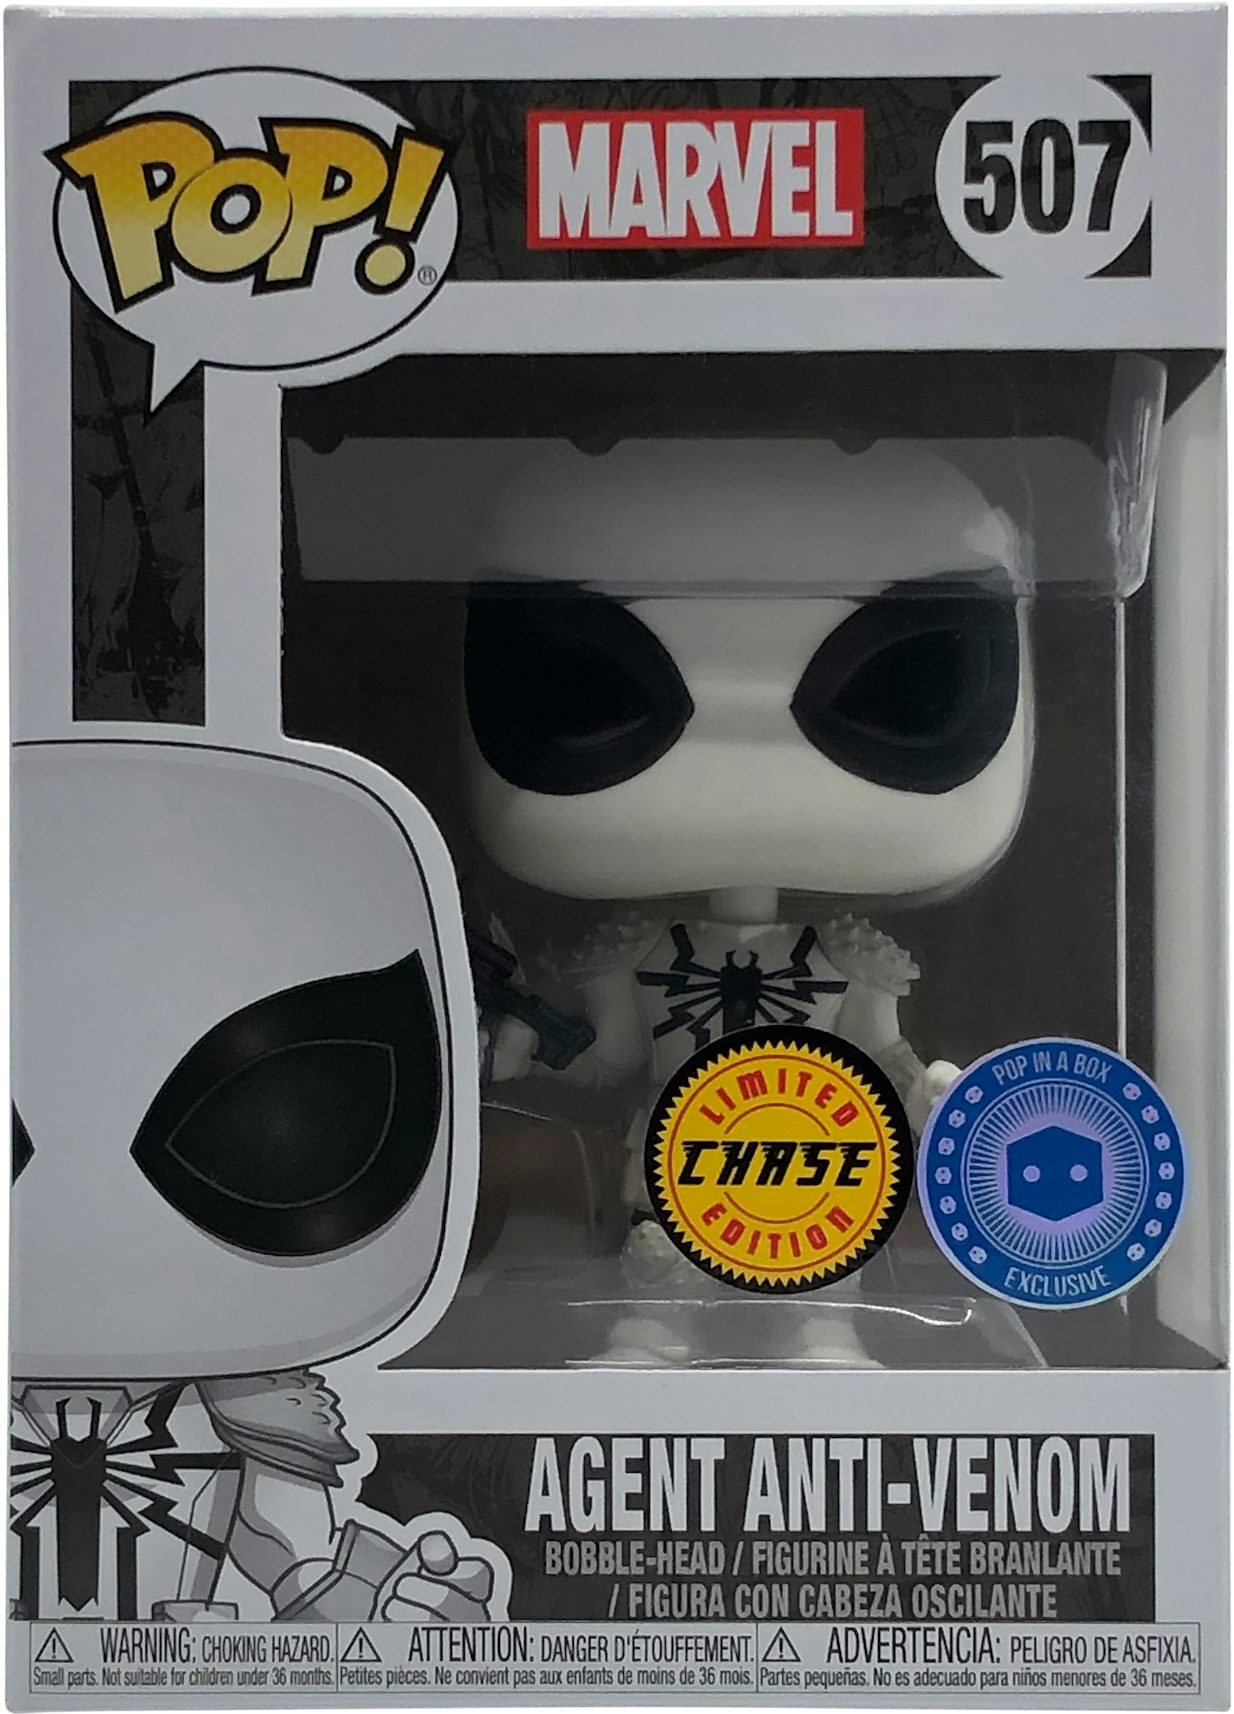 Funko Pop! Marvel Agent Anti-Venom (Chase) Pop In A Box Exclusive